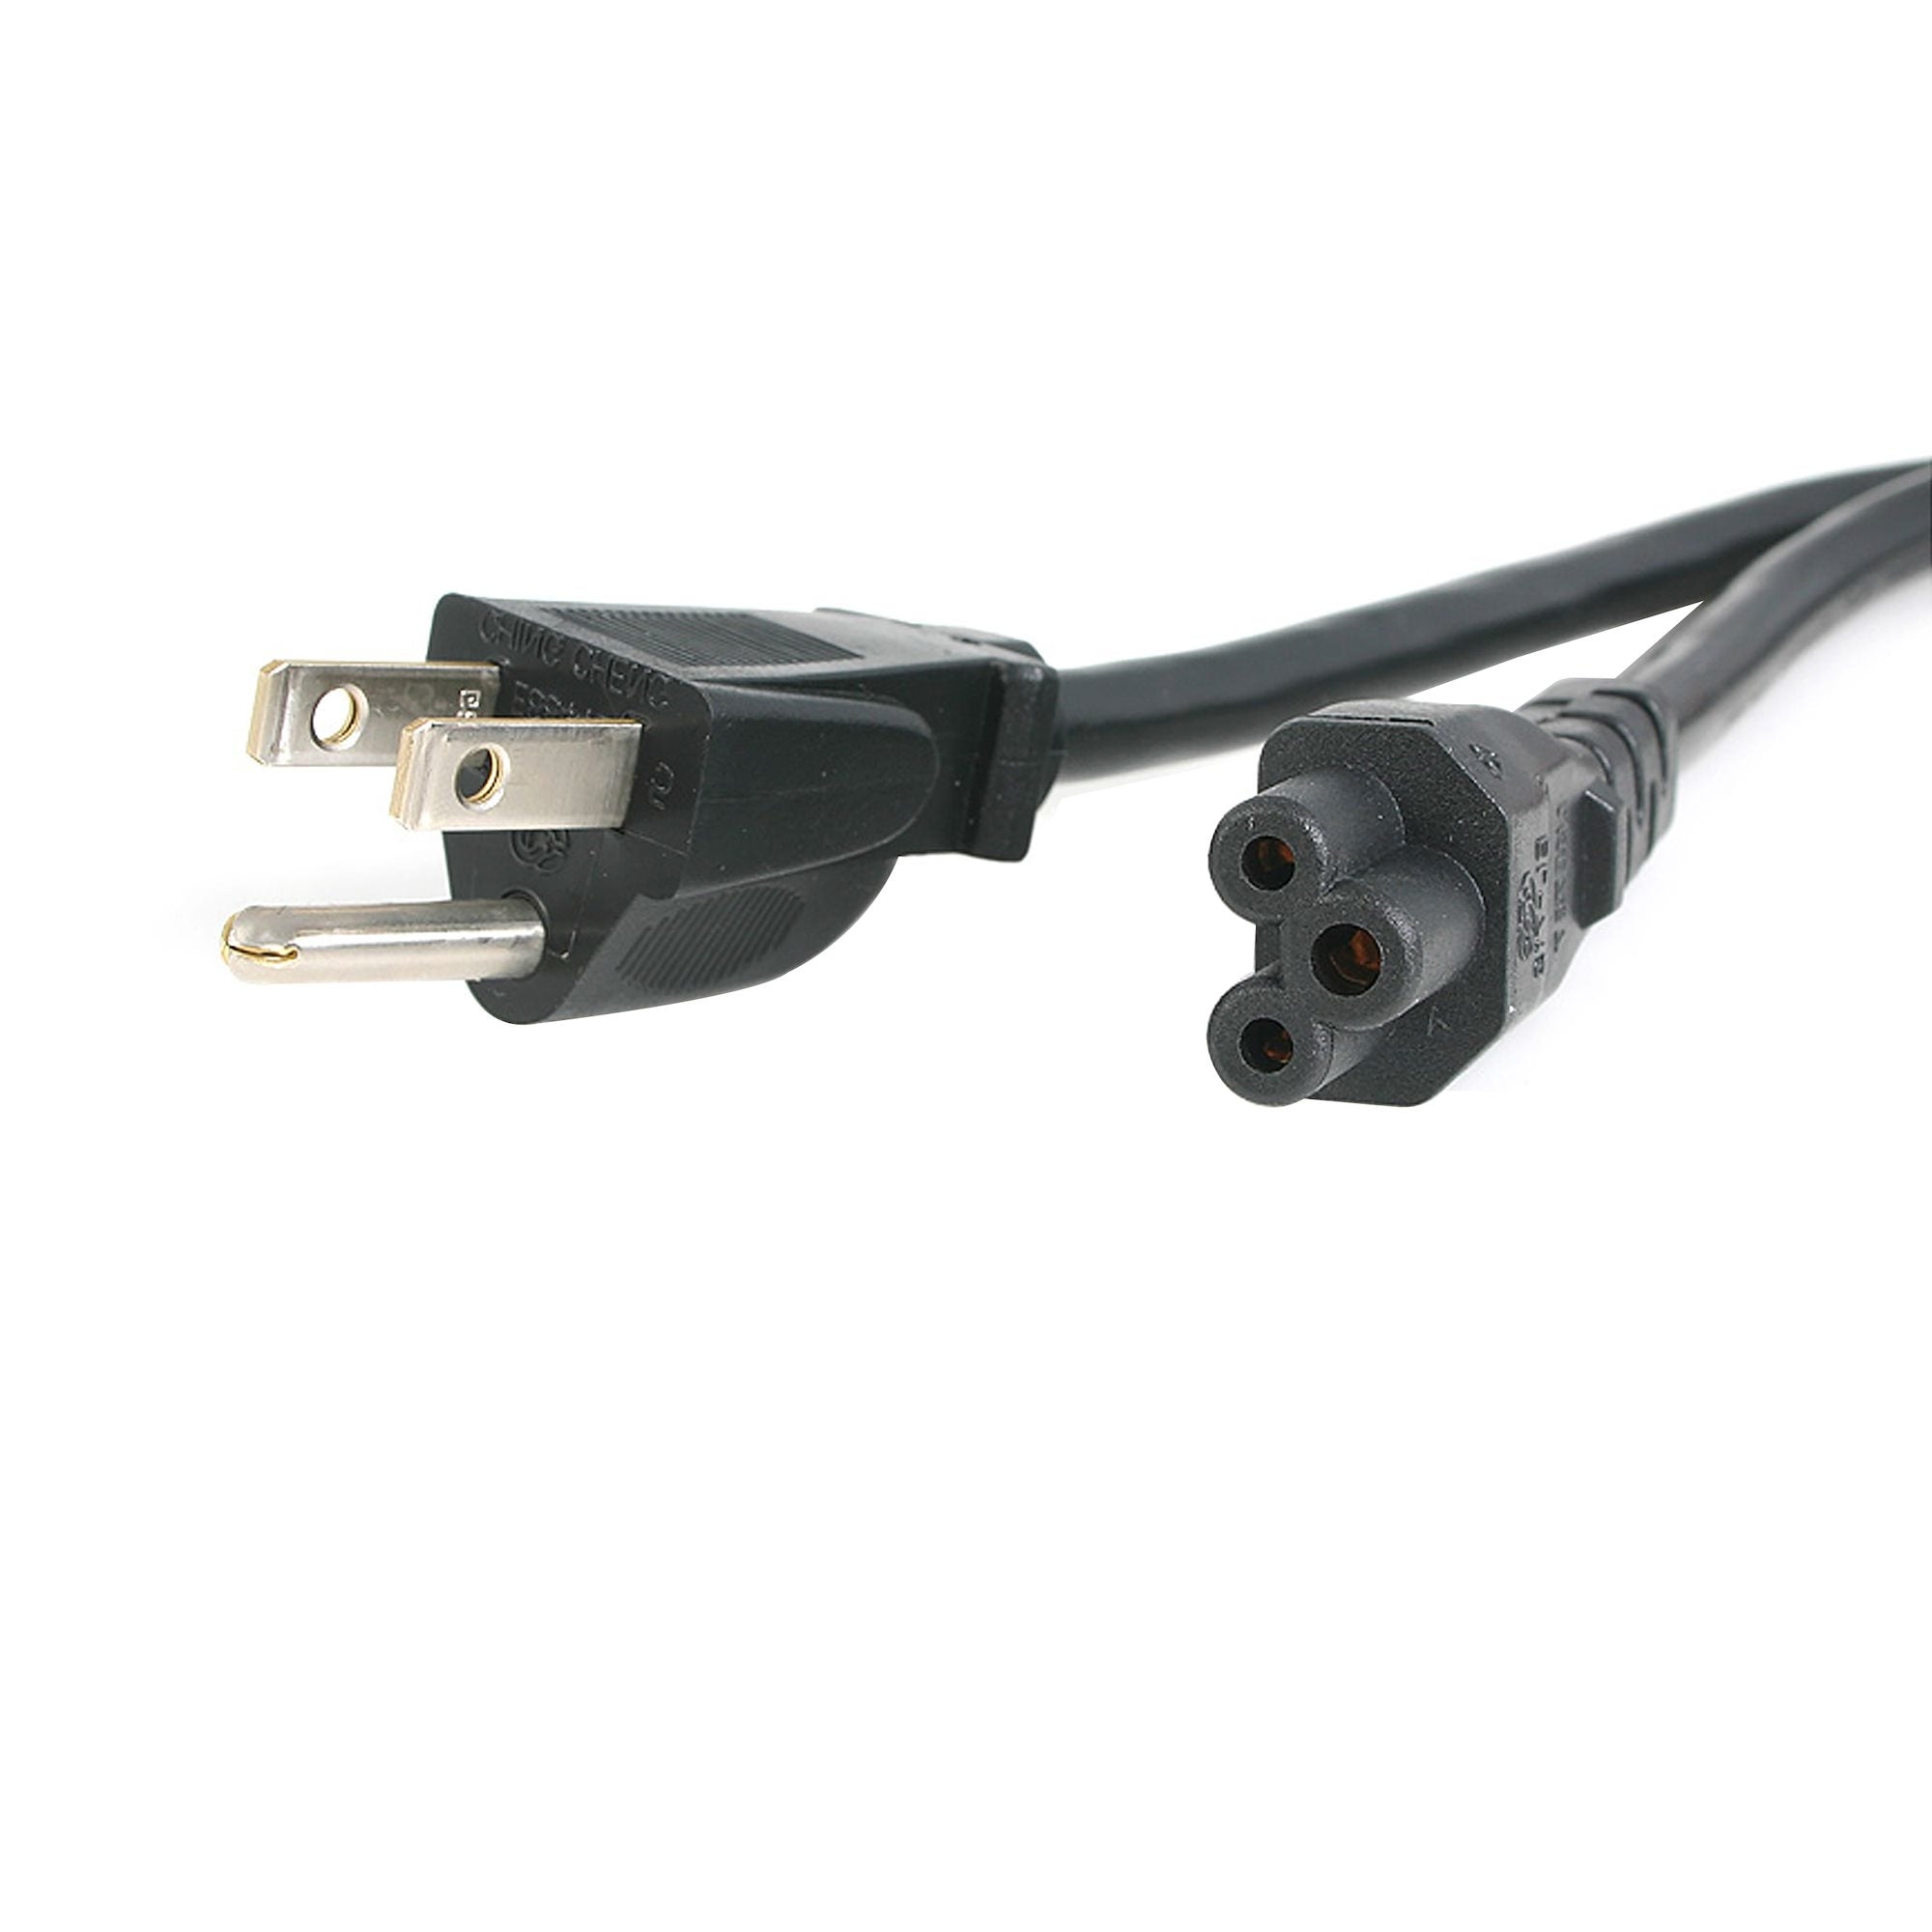 Cable De 1.8M Estándar Para Laptop - Nema 5-15P A C5 - Startech.Com Mod. Pxt101Nb3S